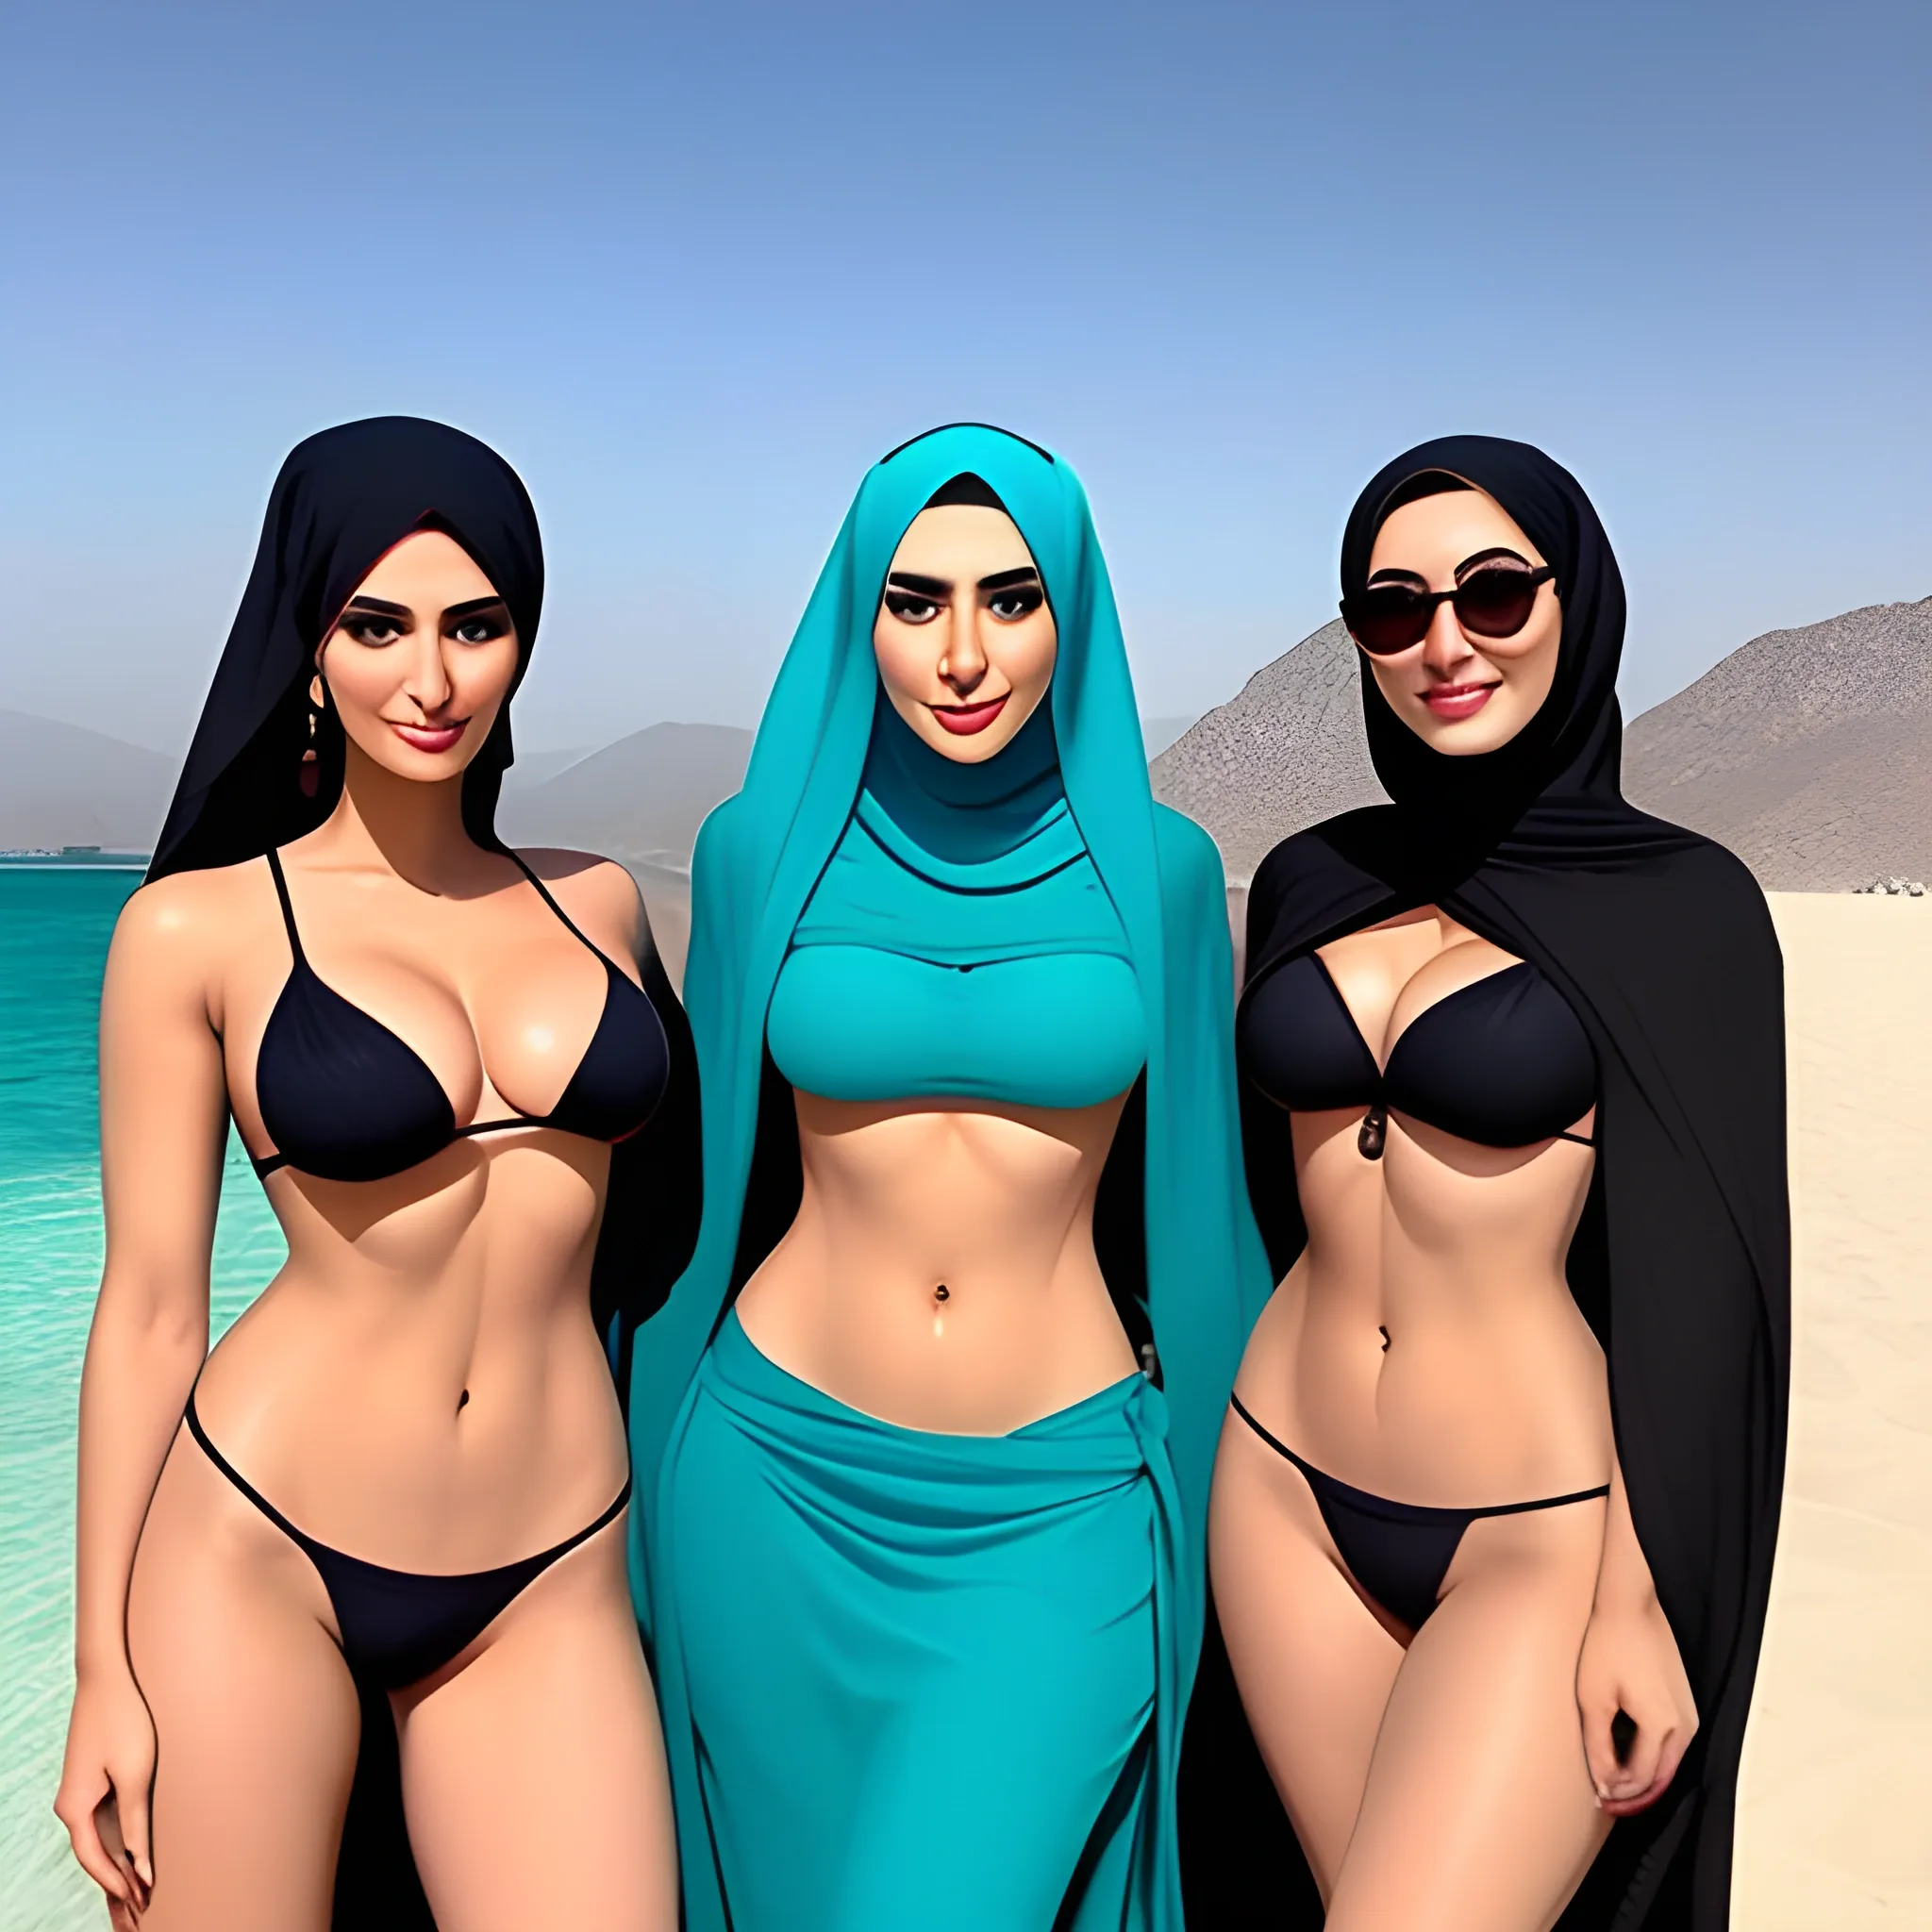  Iranian woman with a chador hijab - bikini- four girl